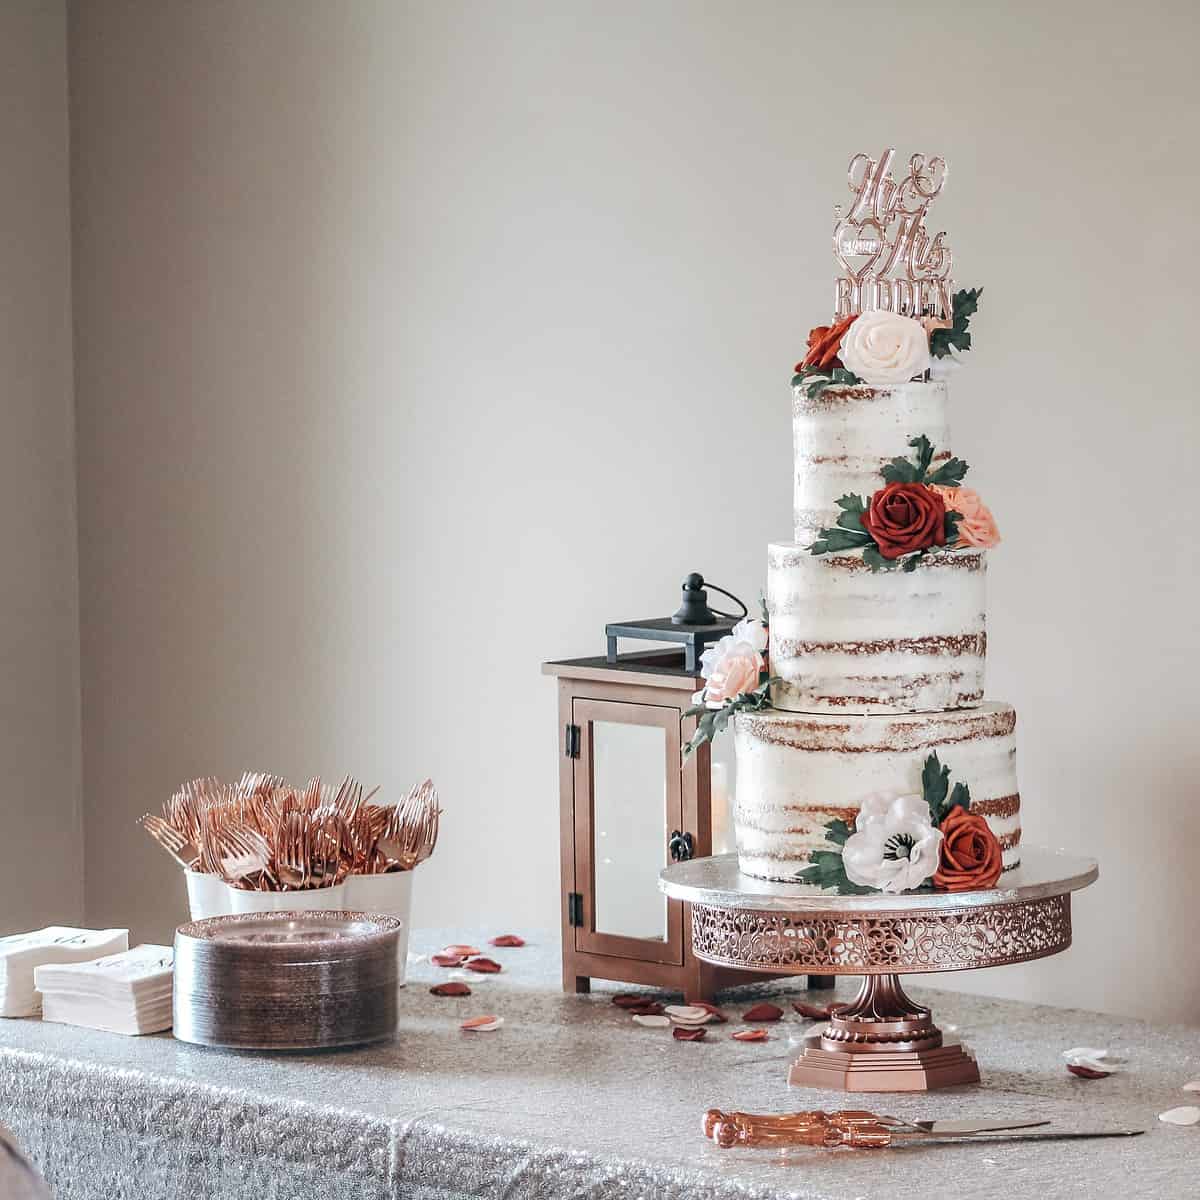 Os 12 sabores mais pedidos de bolo de casamento e dicas para escolher o seu!